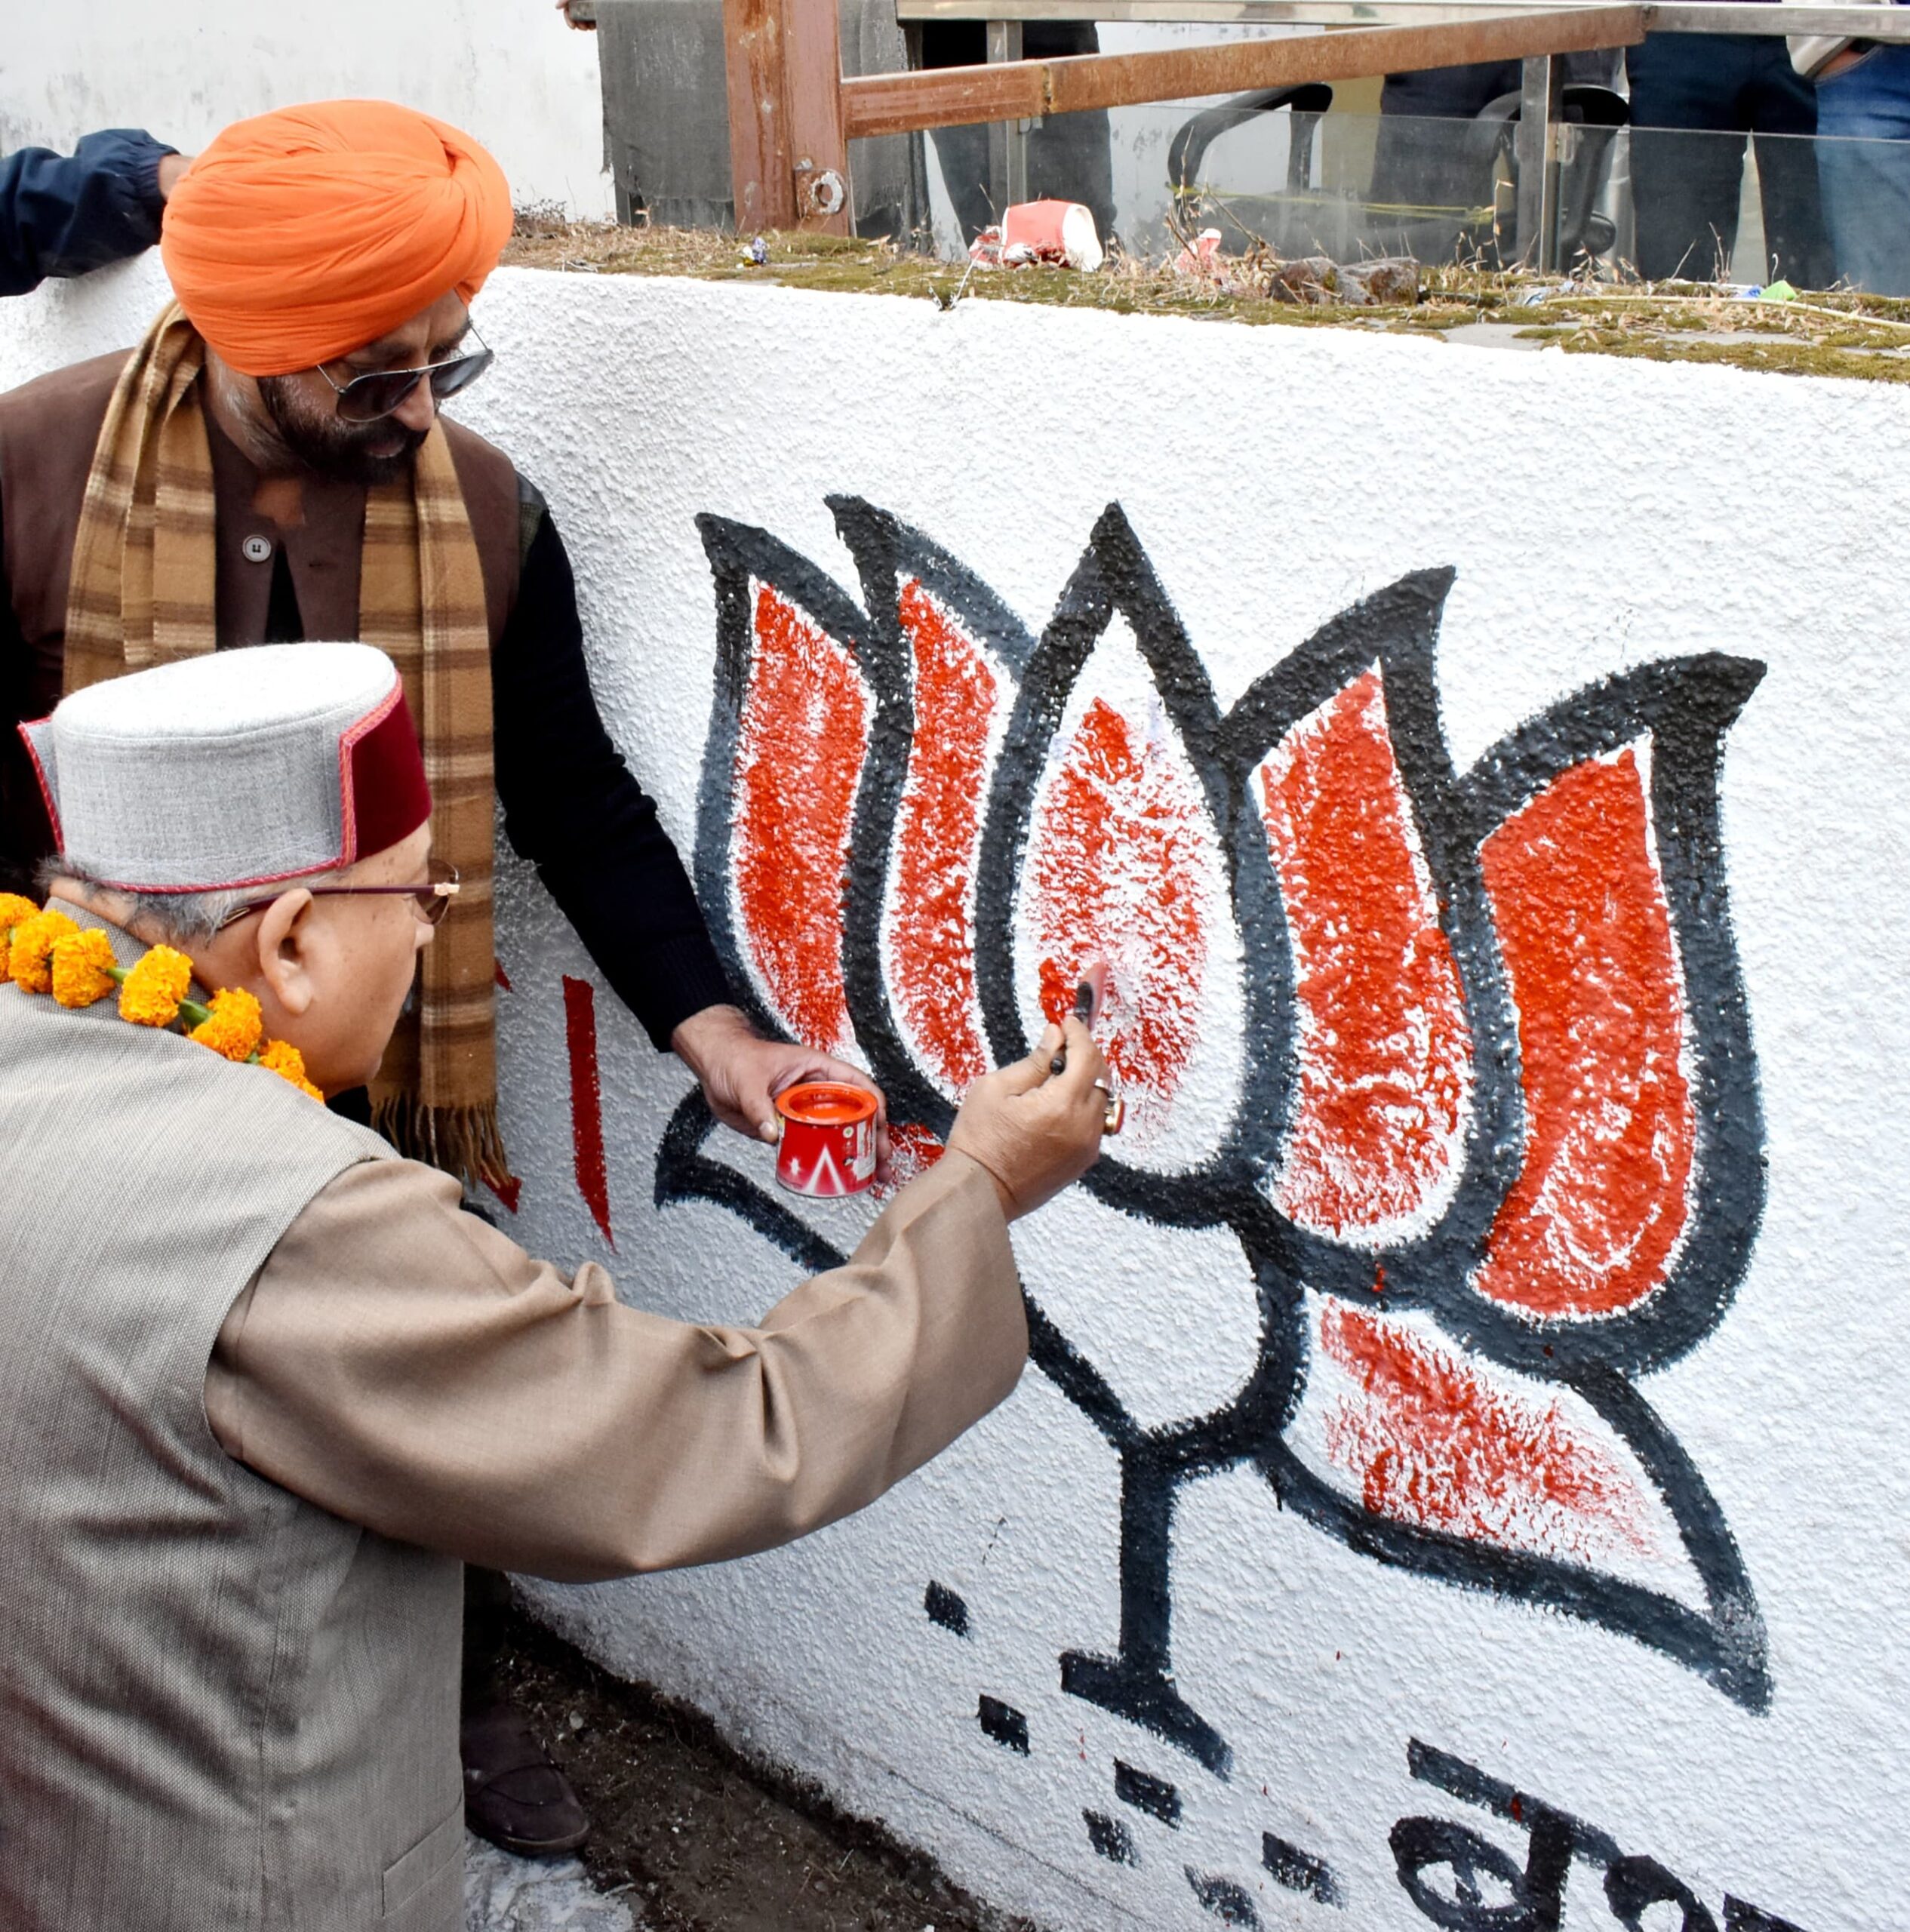 दीवार लेखन अभियान (वॉल पेंटिंग) की शुरुआत,देश के लिए शुभ है कमल का निशान: महाराज।